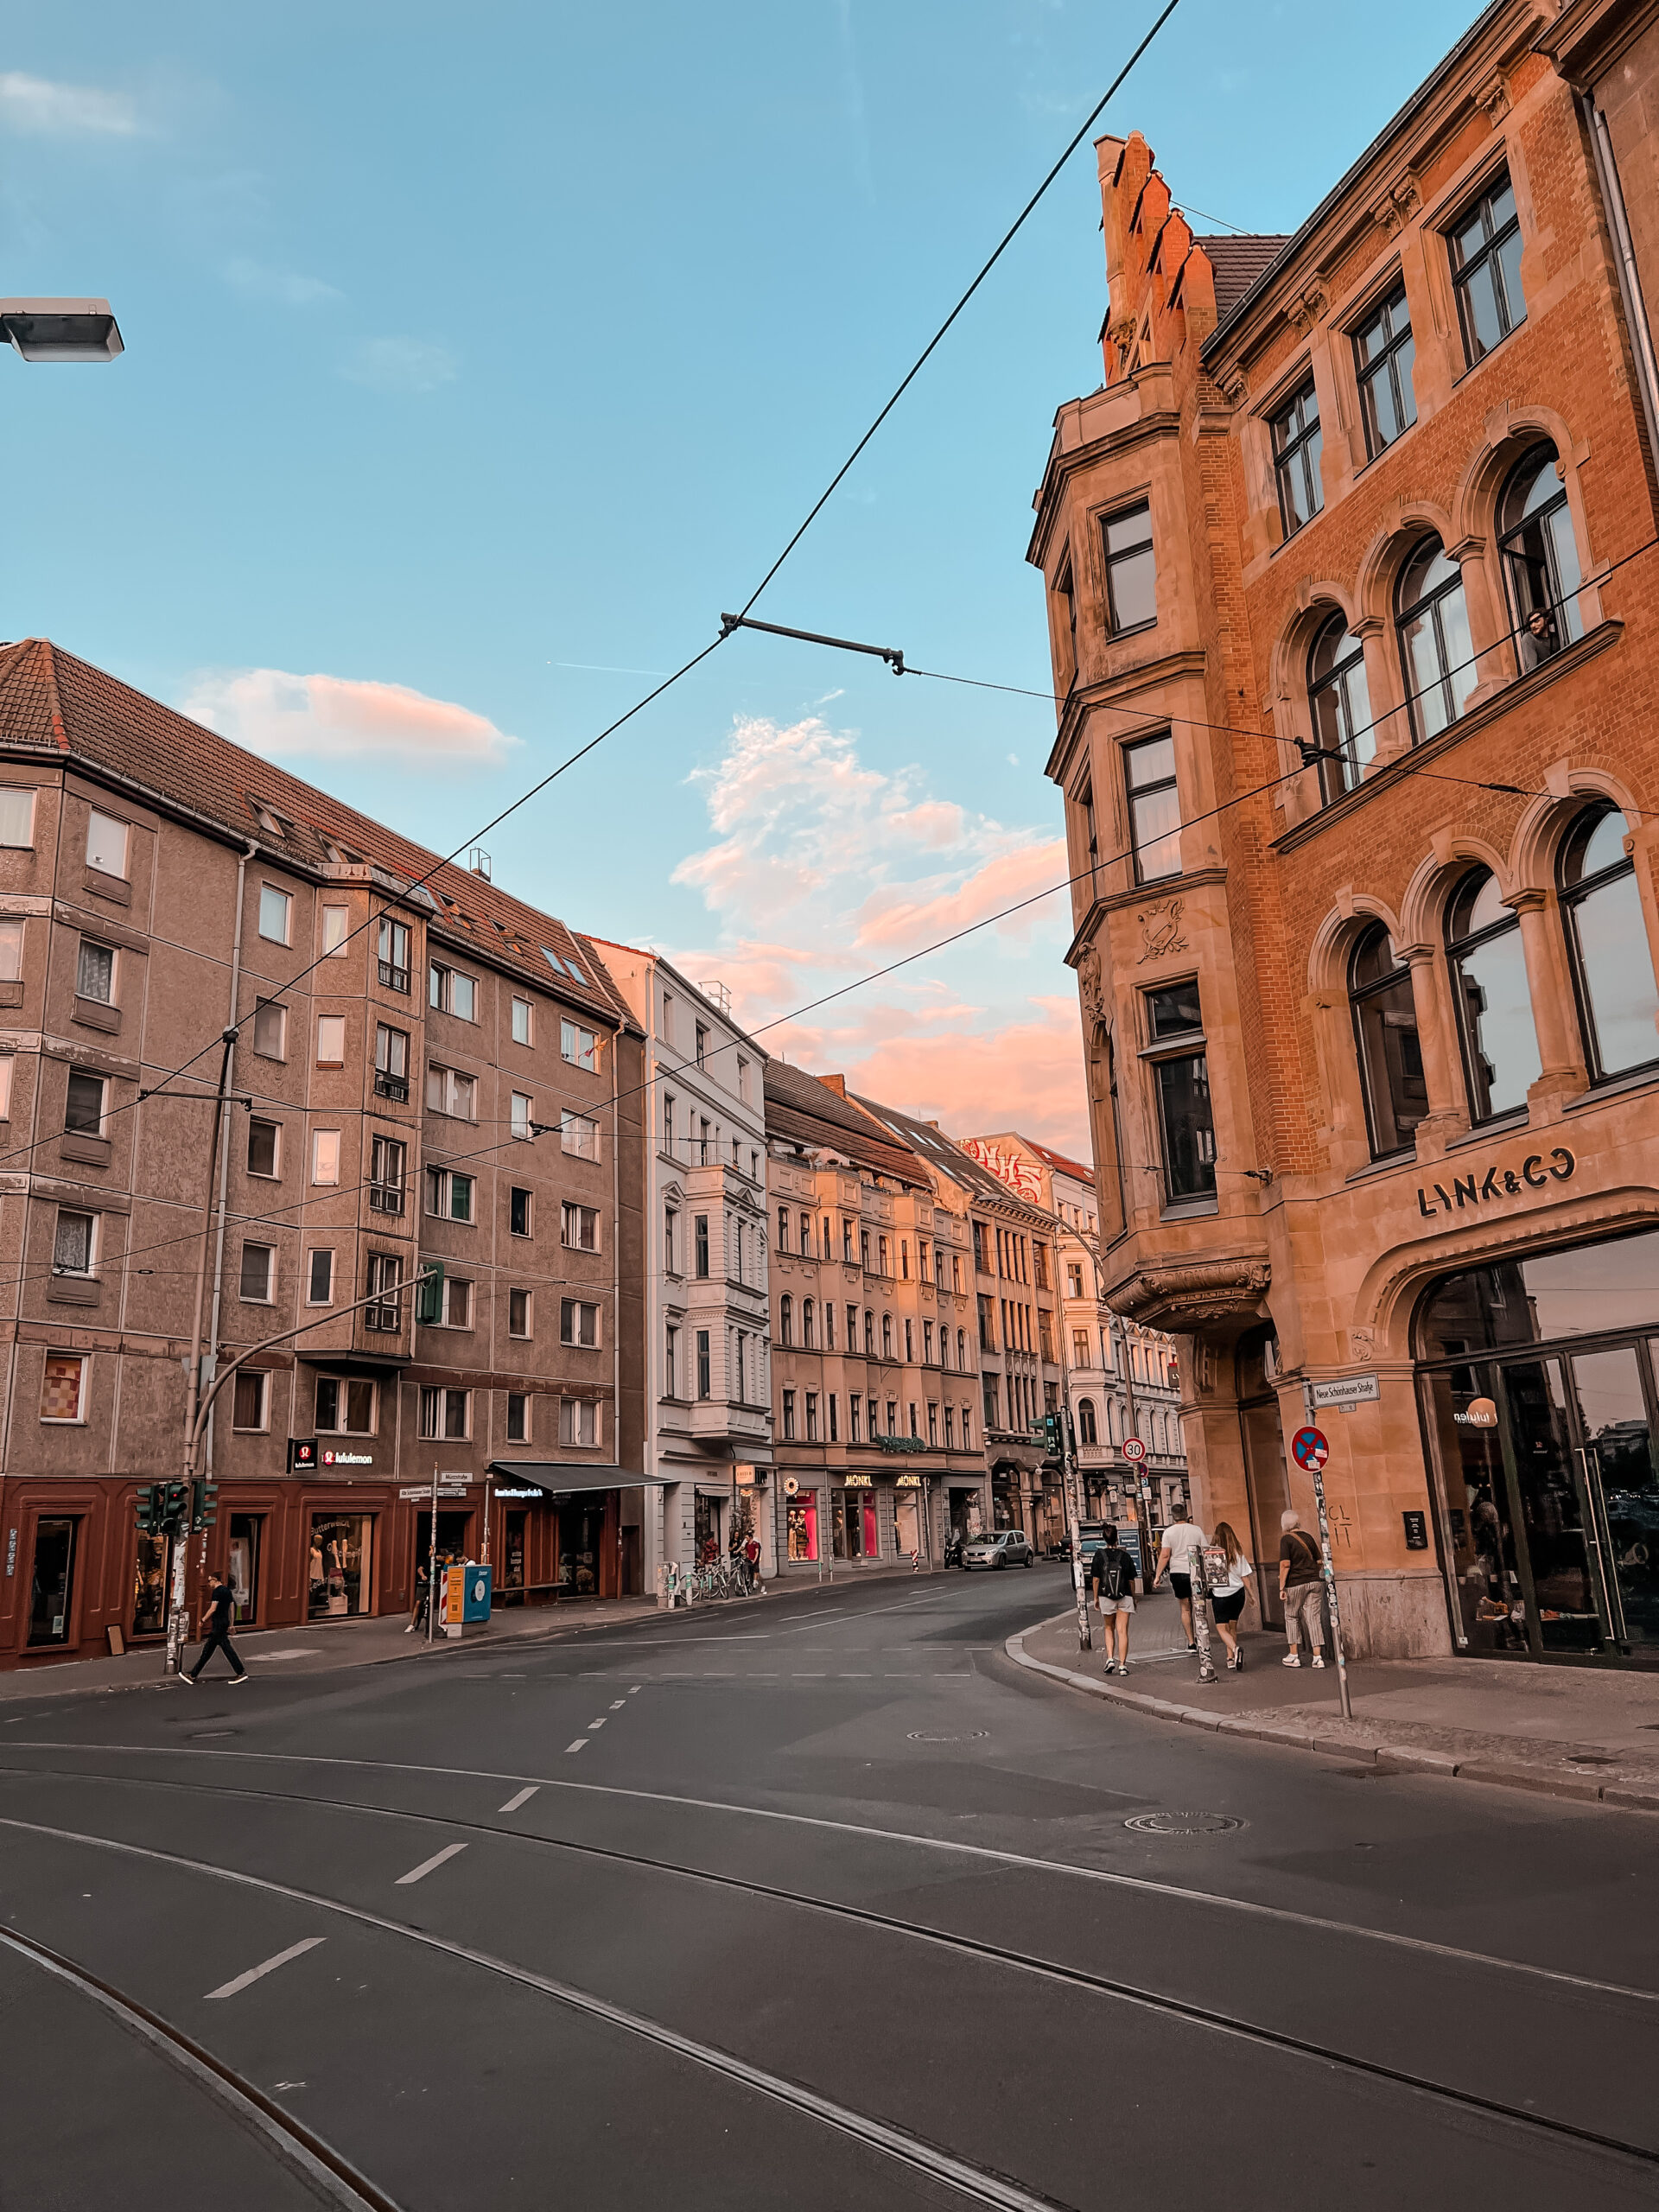 Instagrammable spots in Berlin